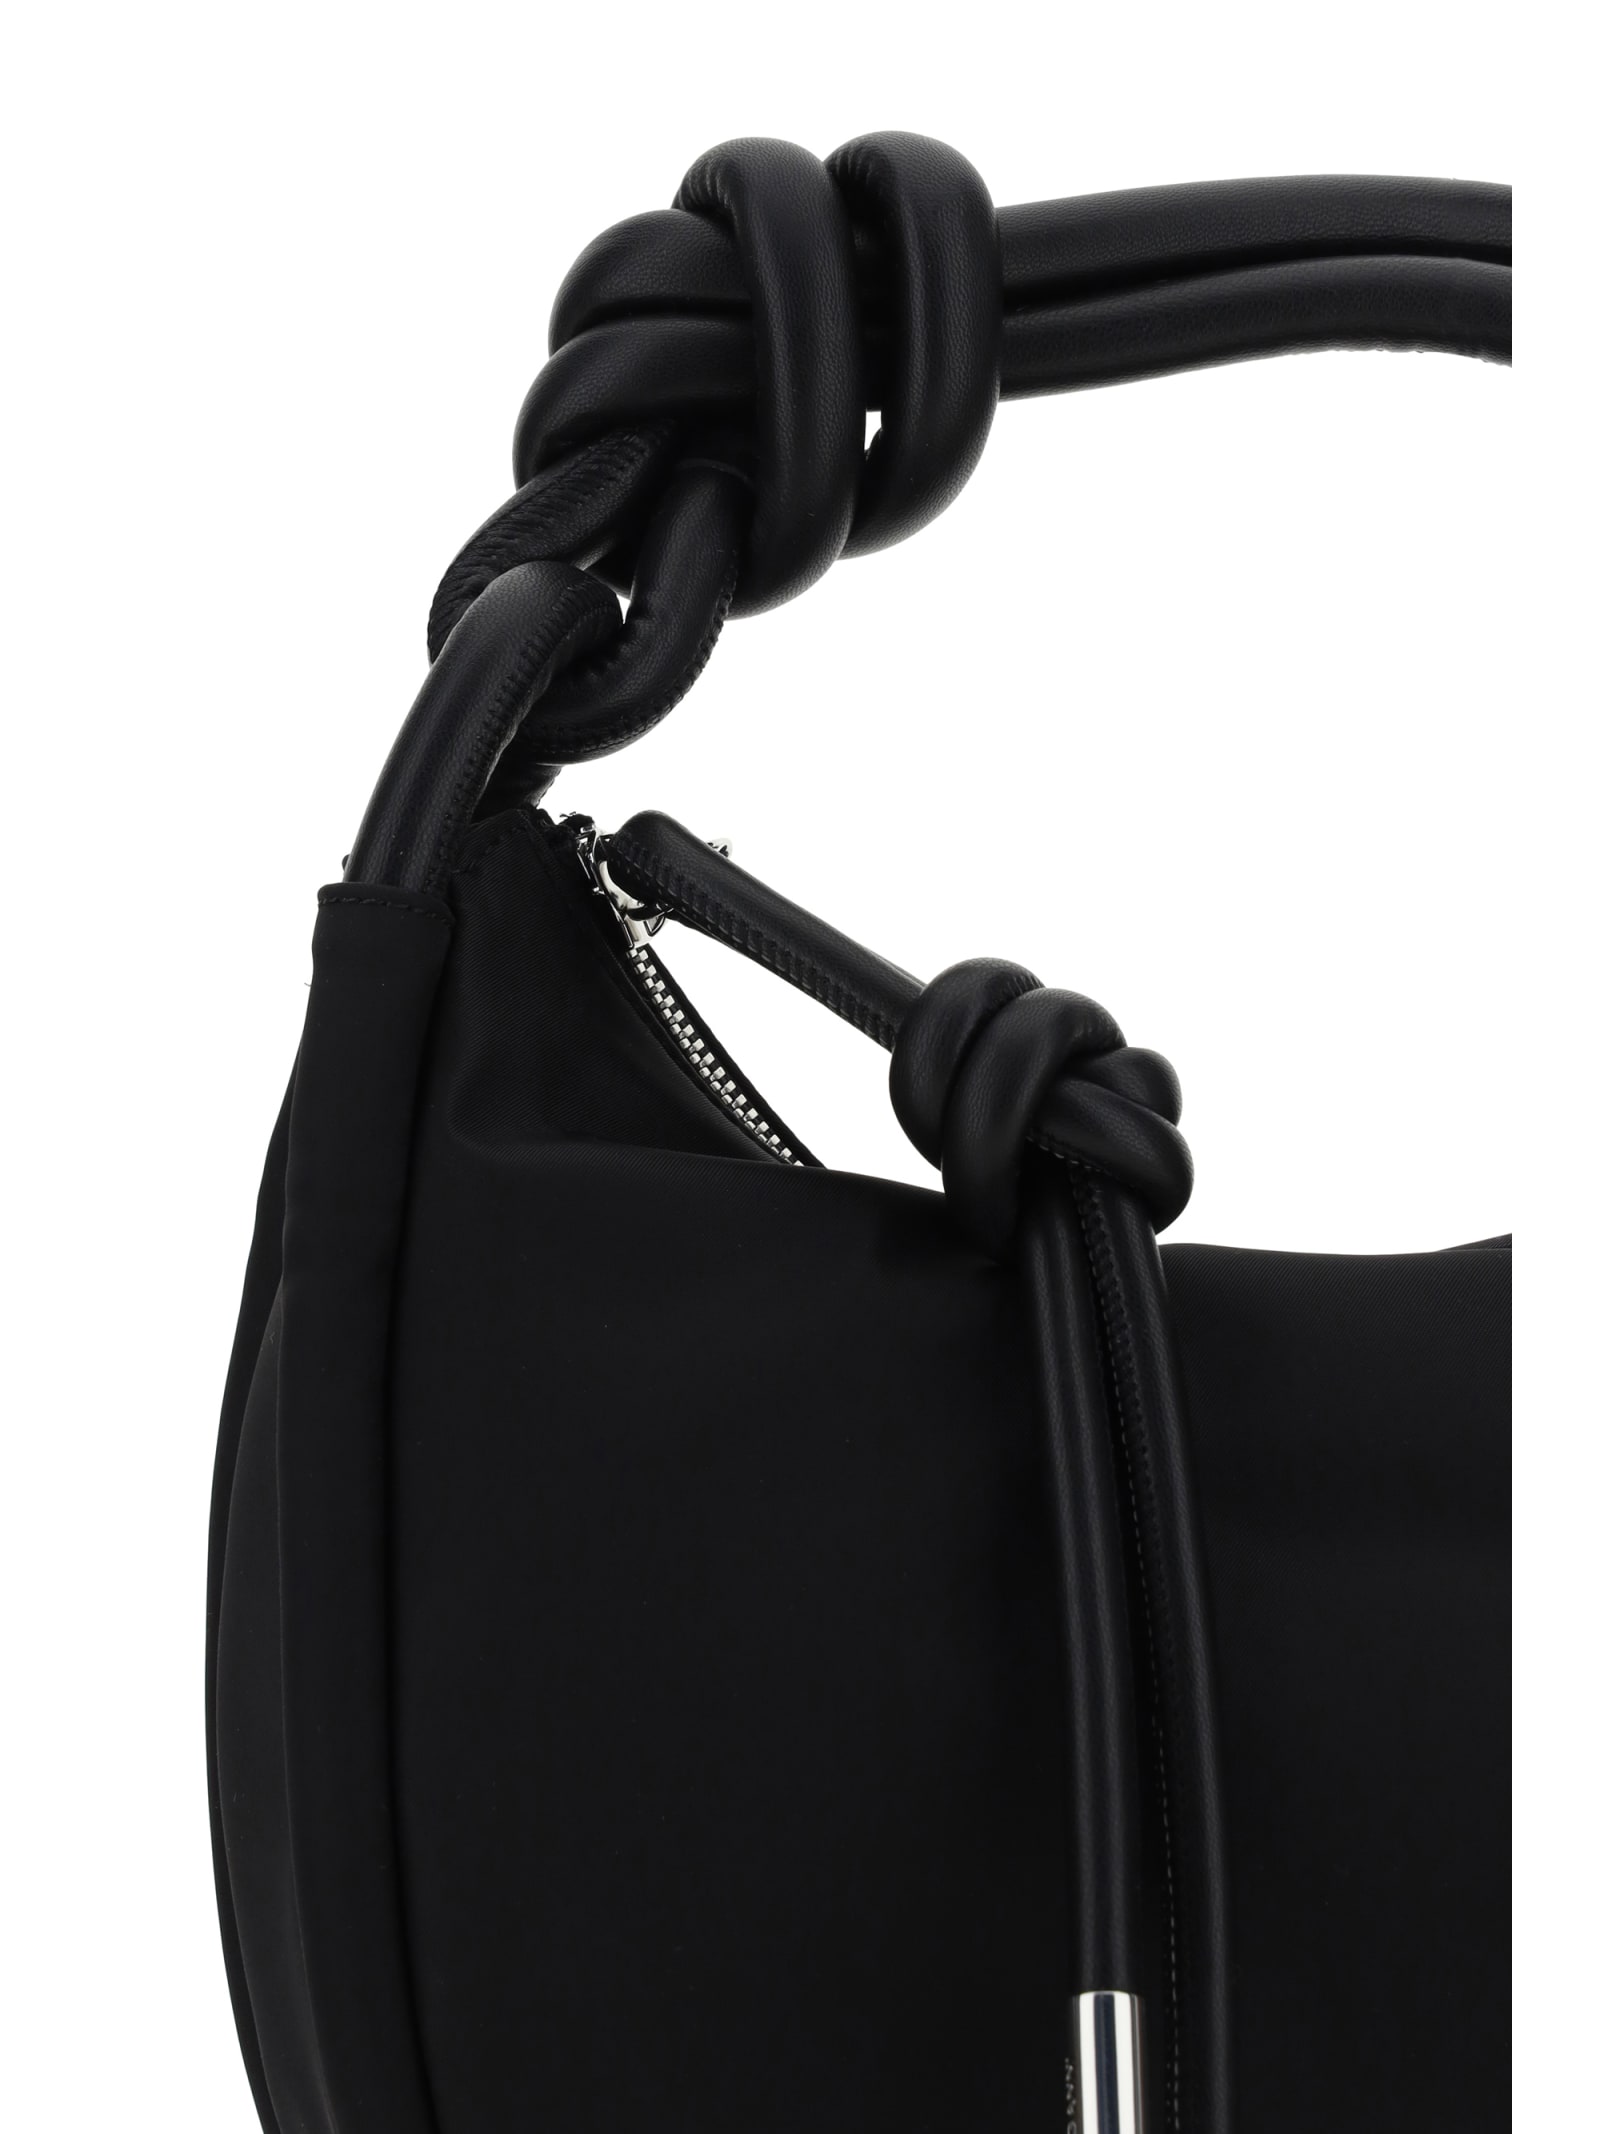 Shop Ganni Baguette Handbag In Black